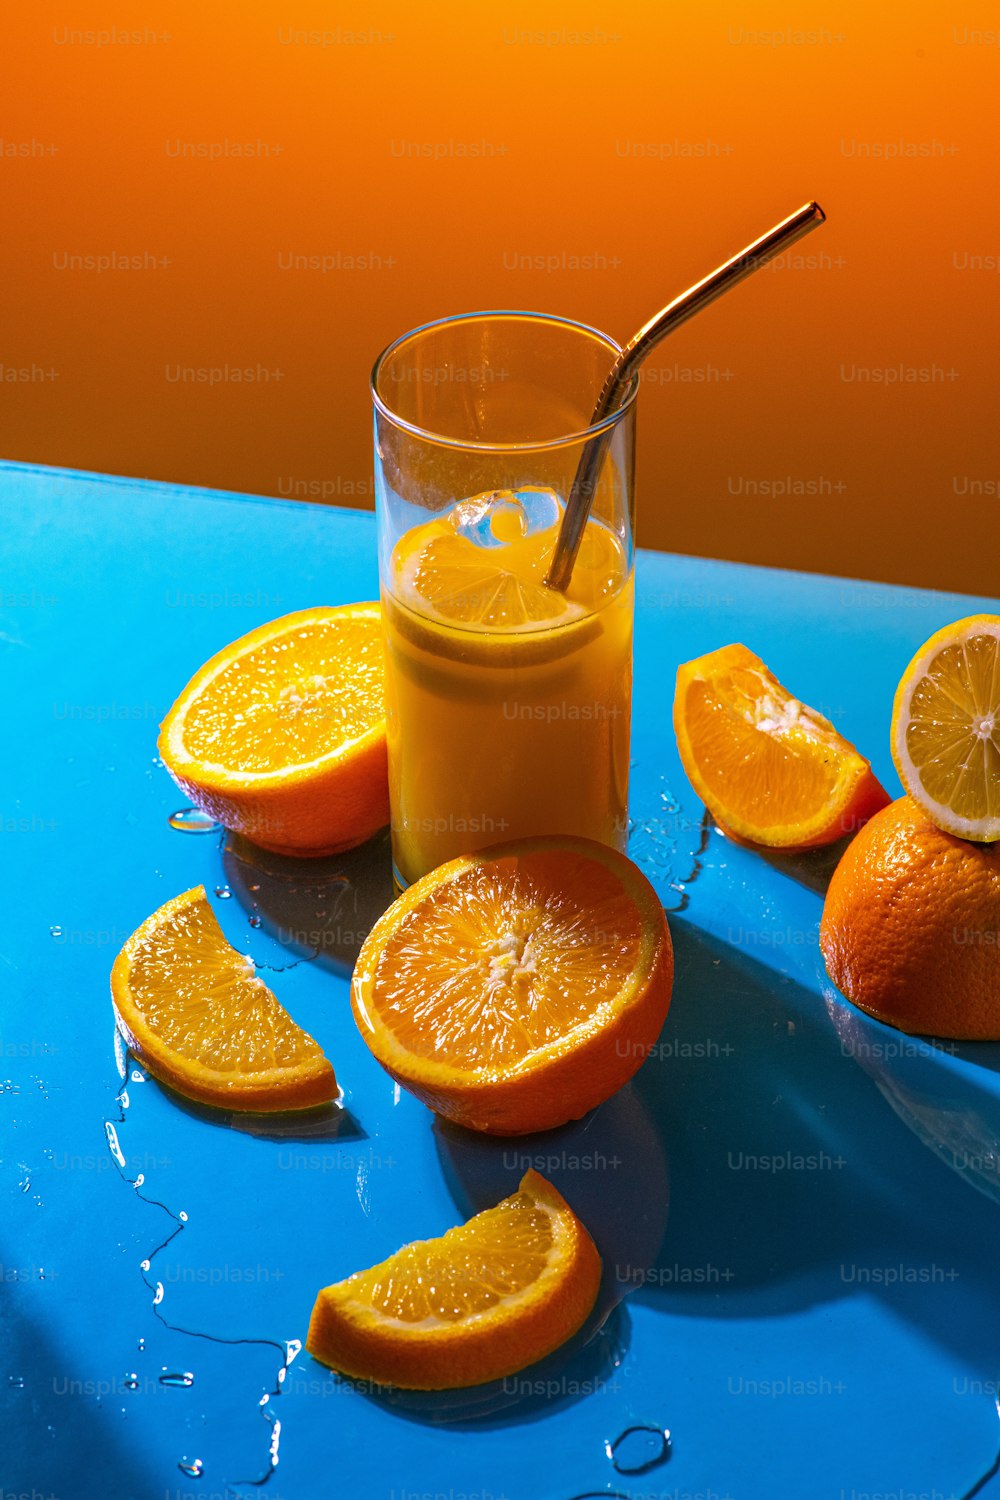 얇게 썬 오렌지 옆에 오렌지 주스 한 잔